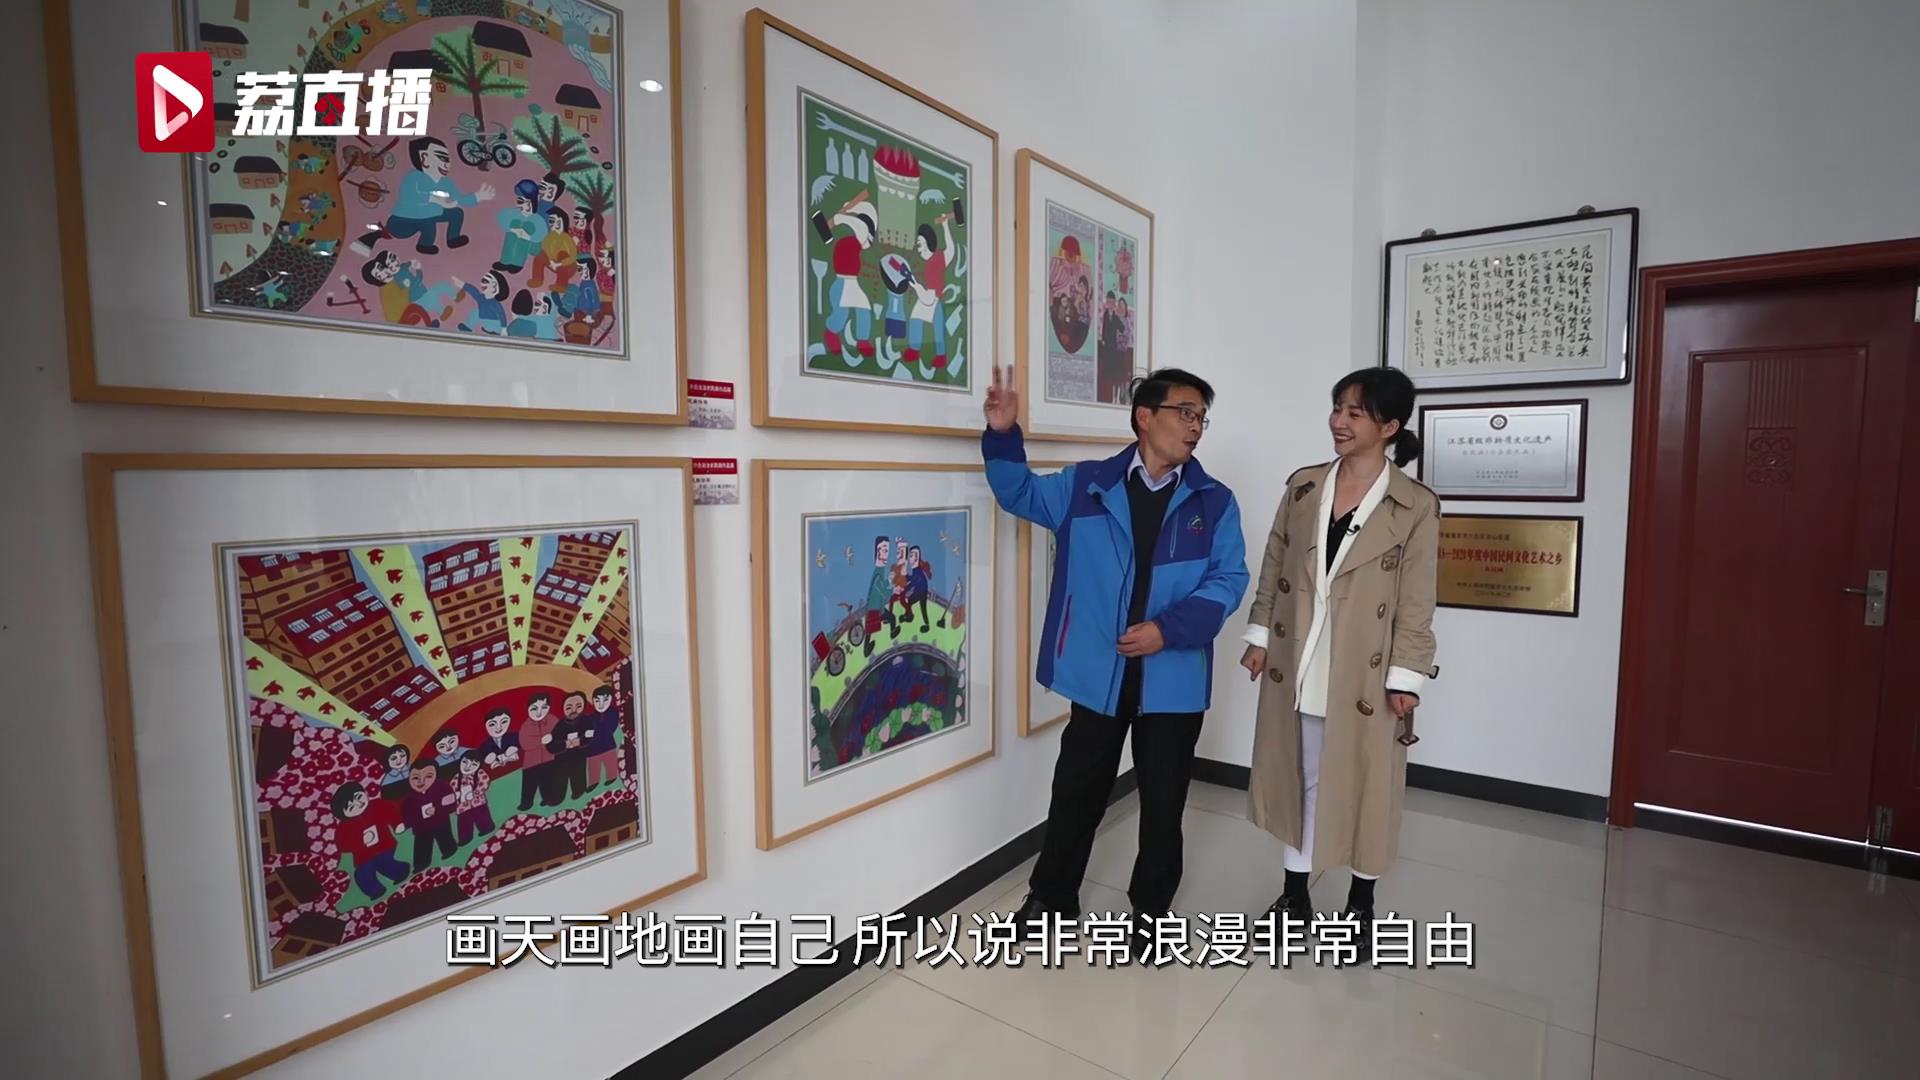 游遍江苏丨南京六合农民画：用“艺术独白”诉说乡村新故事